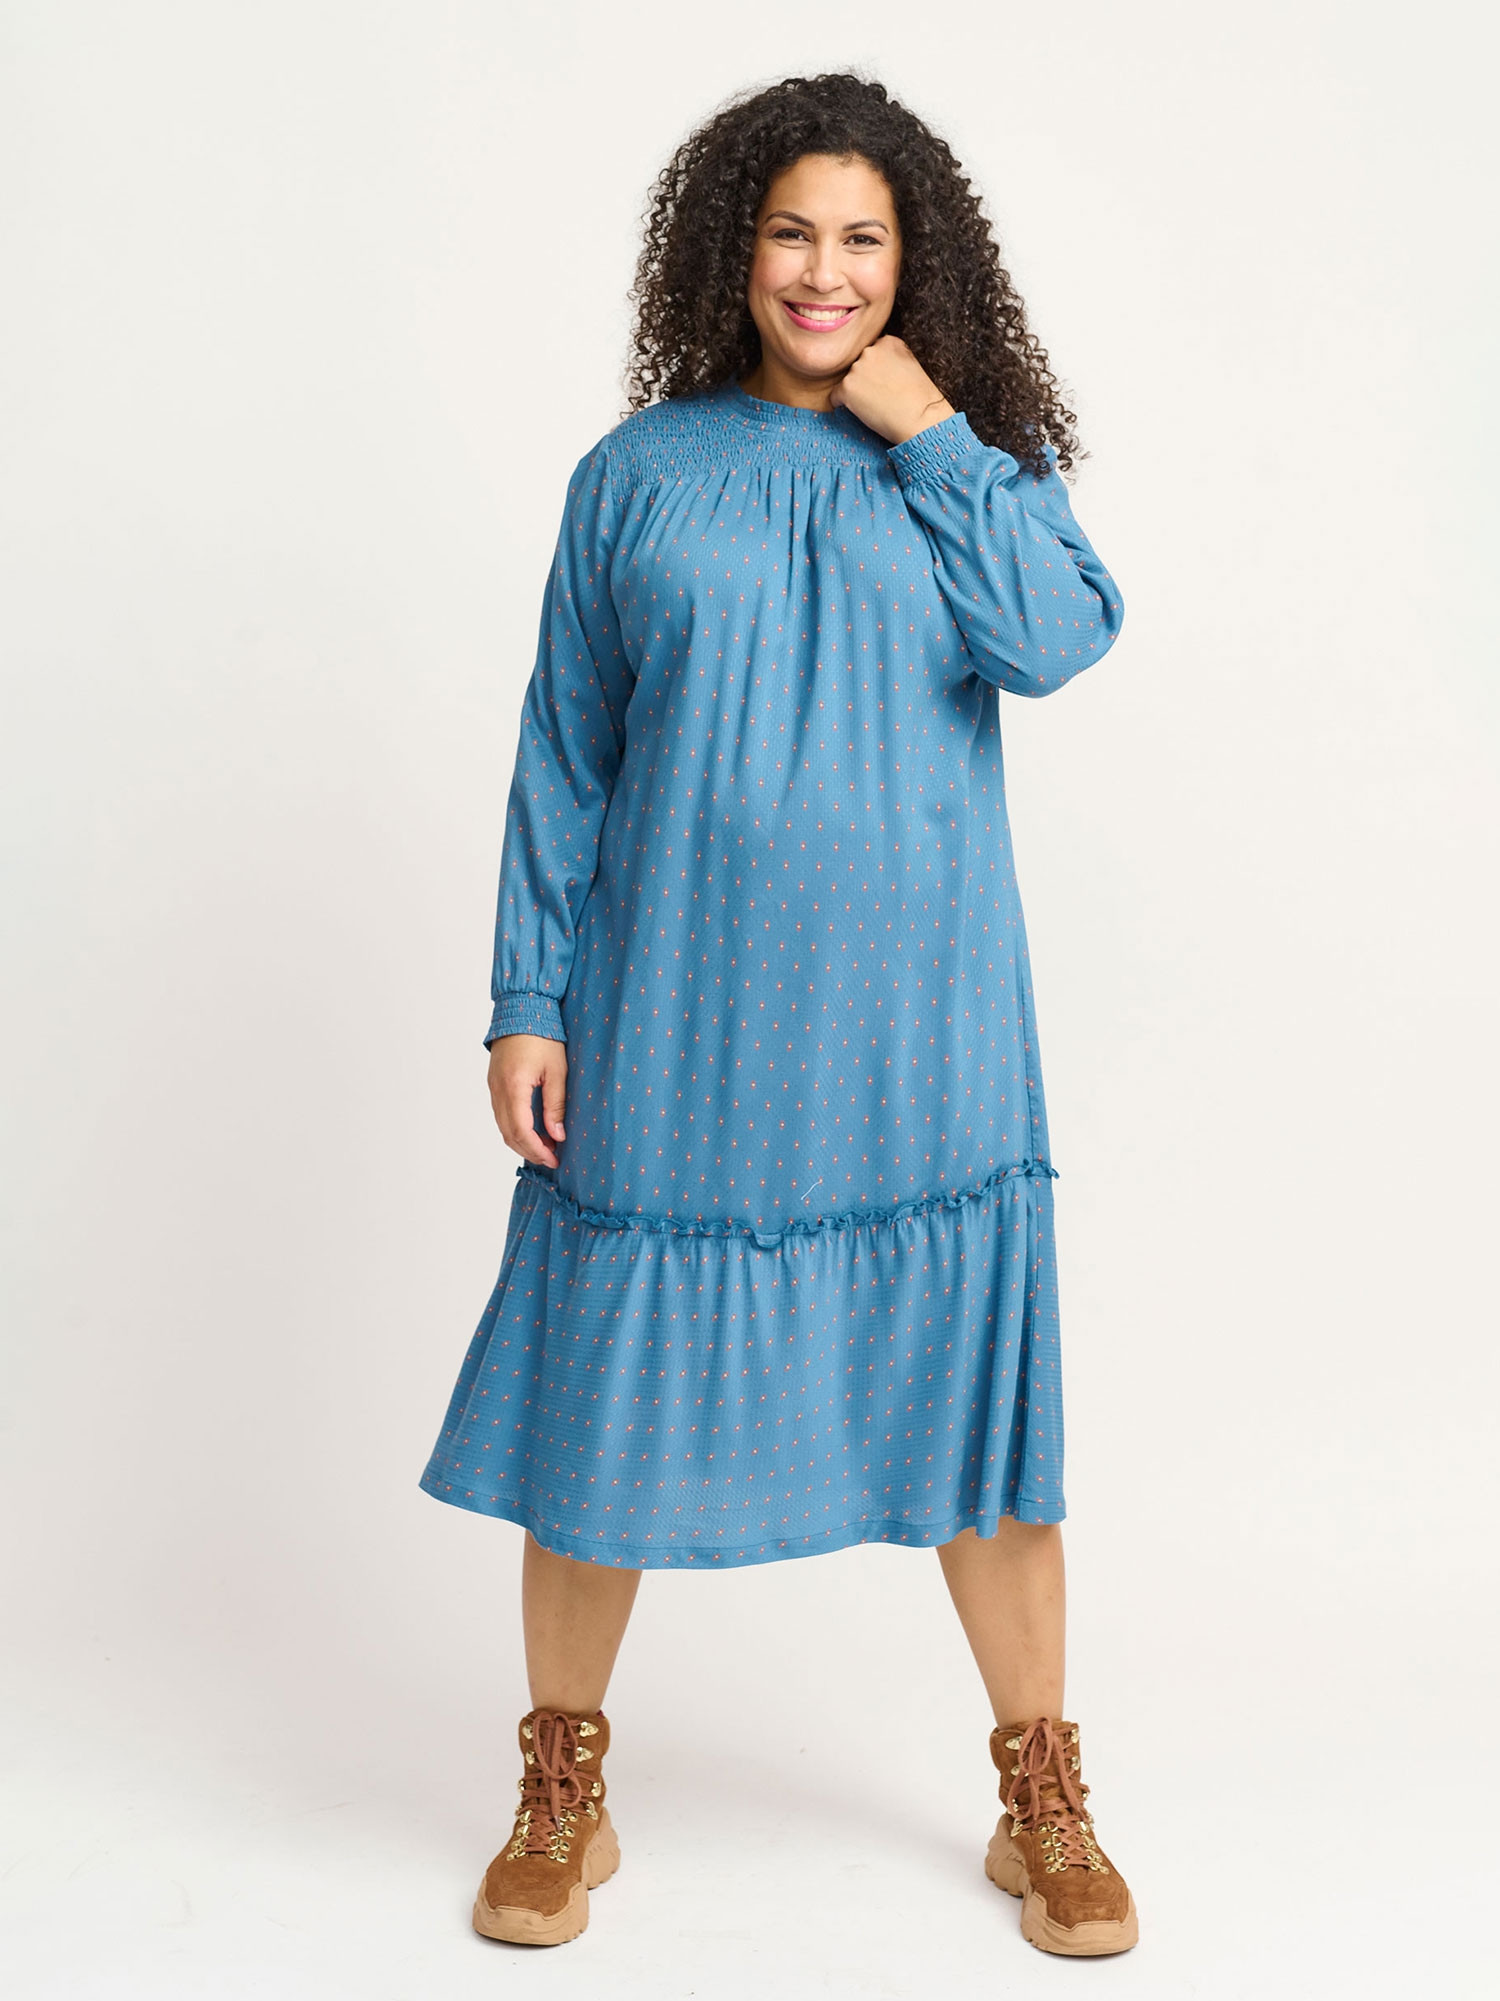 MARTA - Super flot skjorte kjole med retro print i blå og gyldne toner 